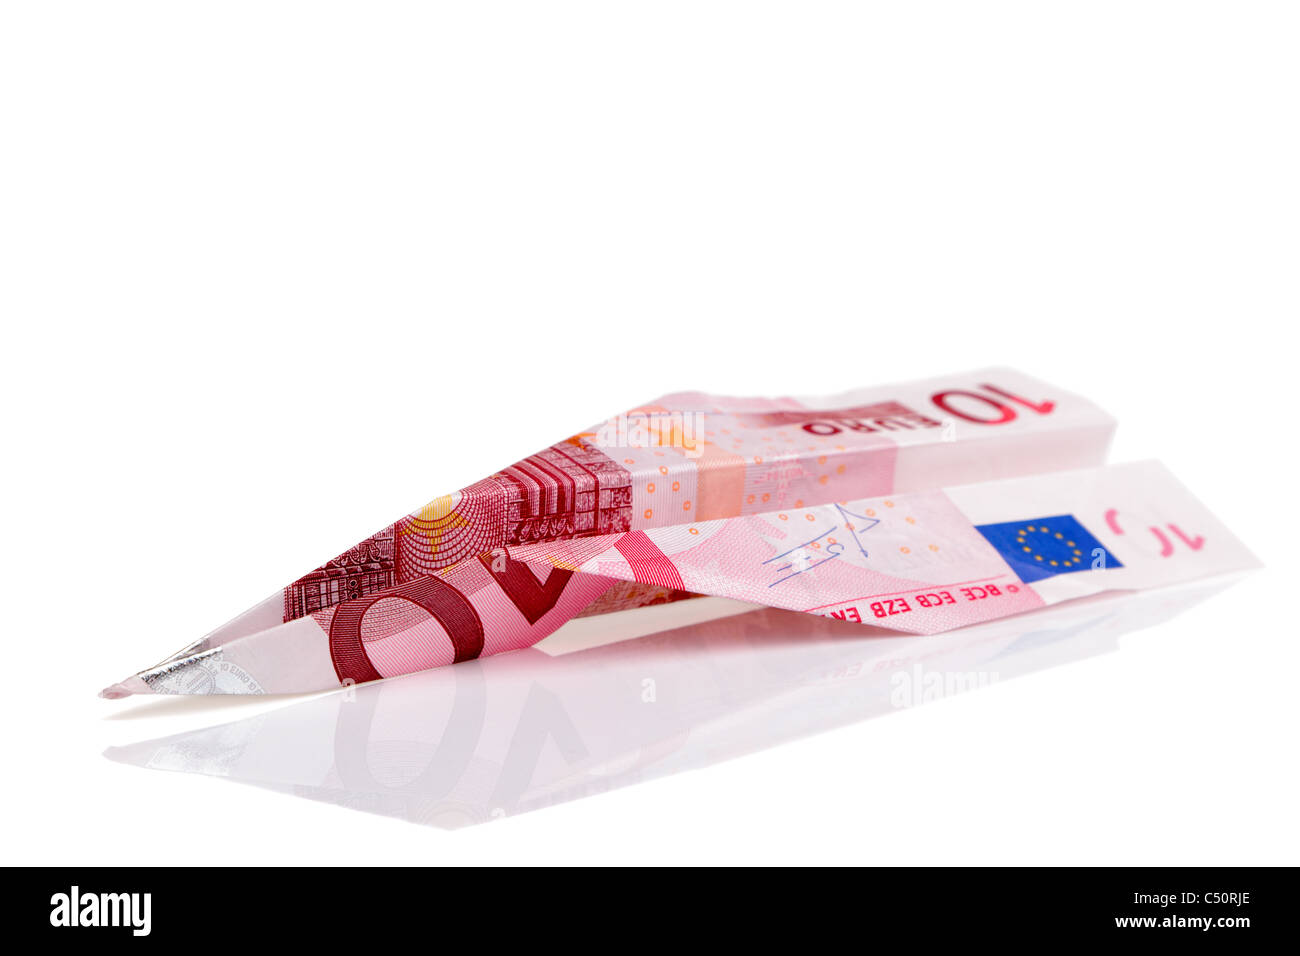 Foto von einem Papierflieger aus einer zehn-Euro-Nabknote, isoliert auf einem weißen Hintergrund gemacht. Stockfoto